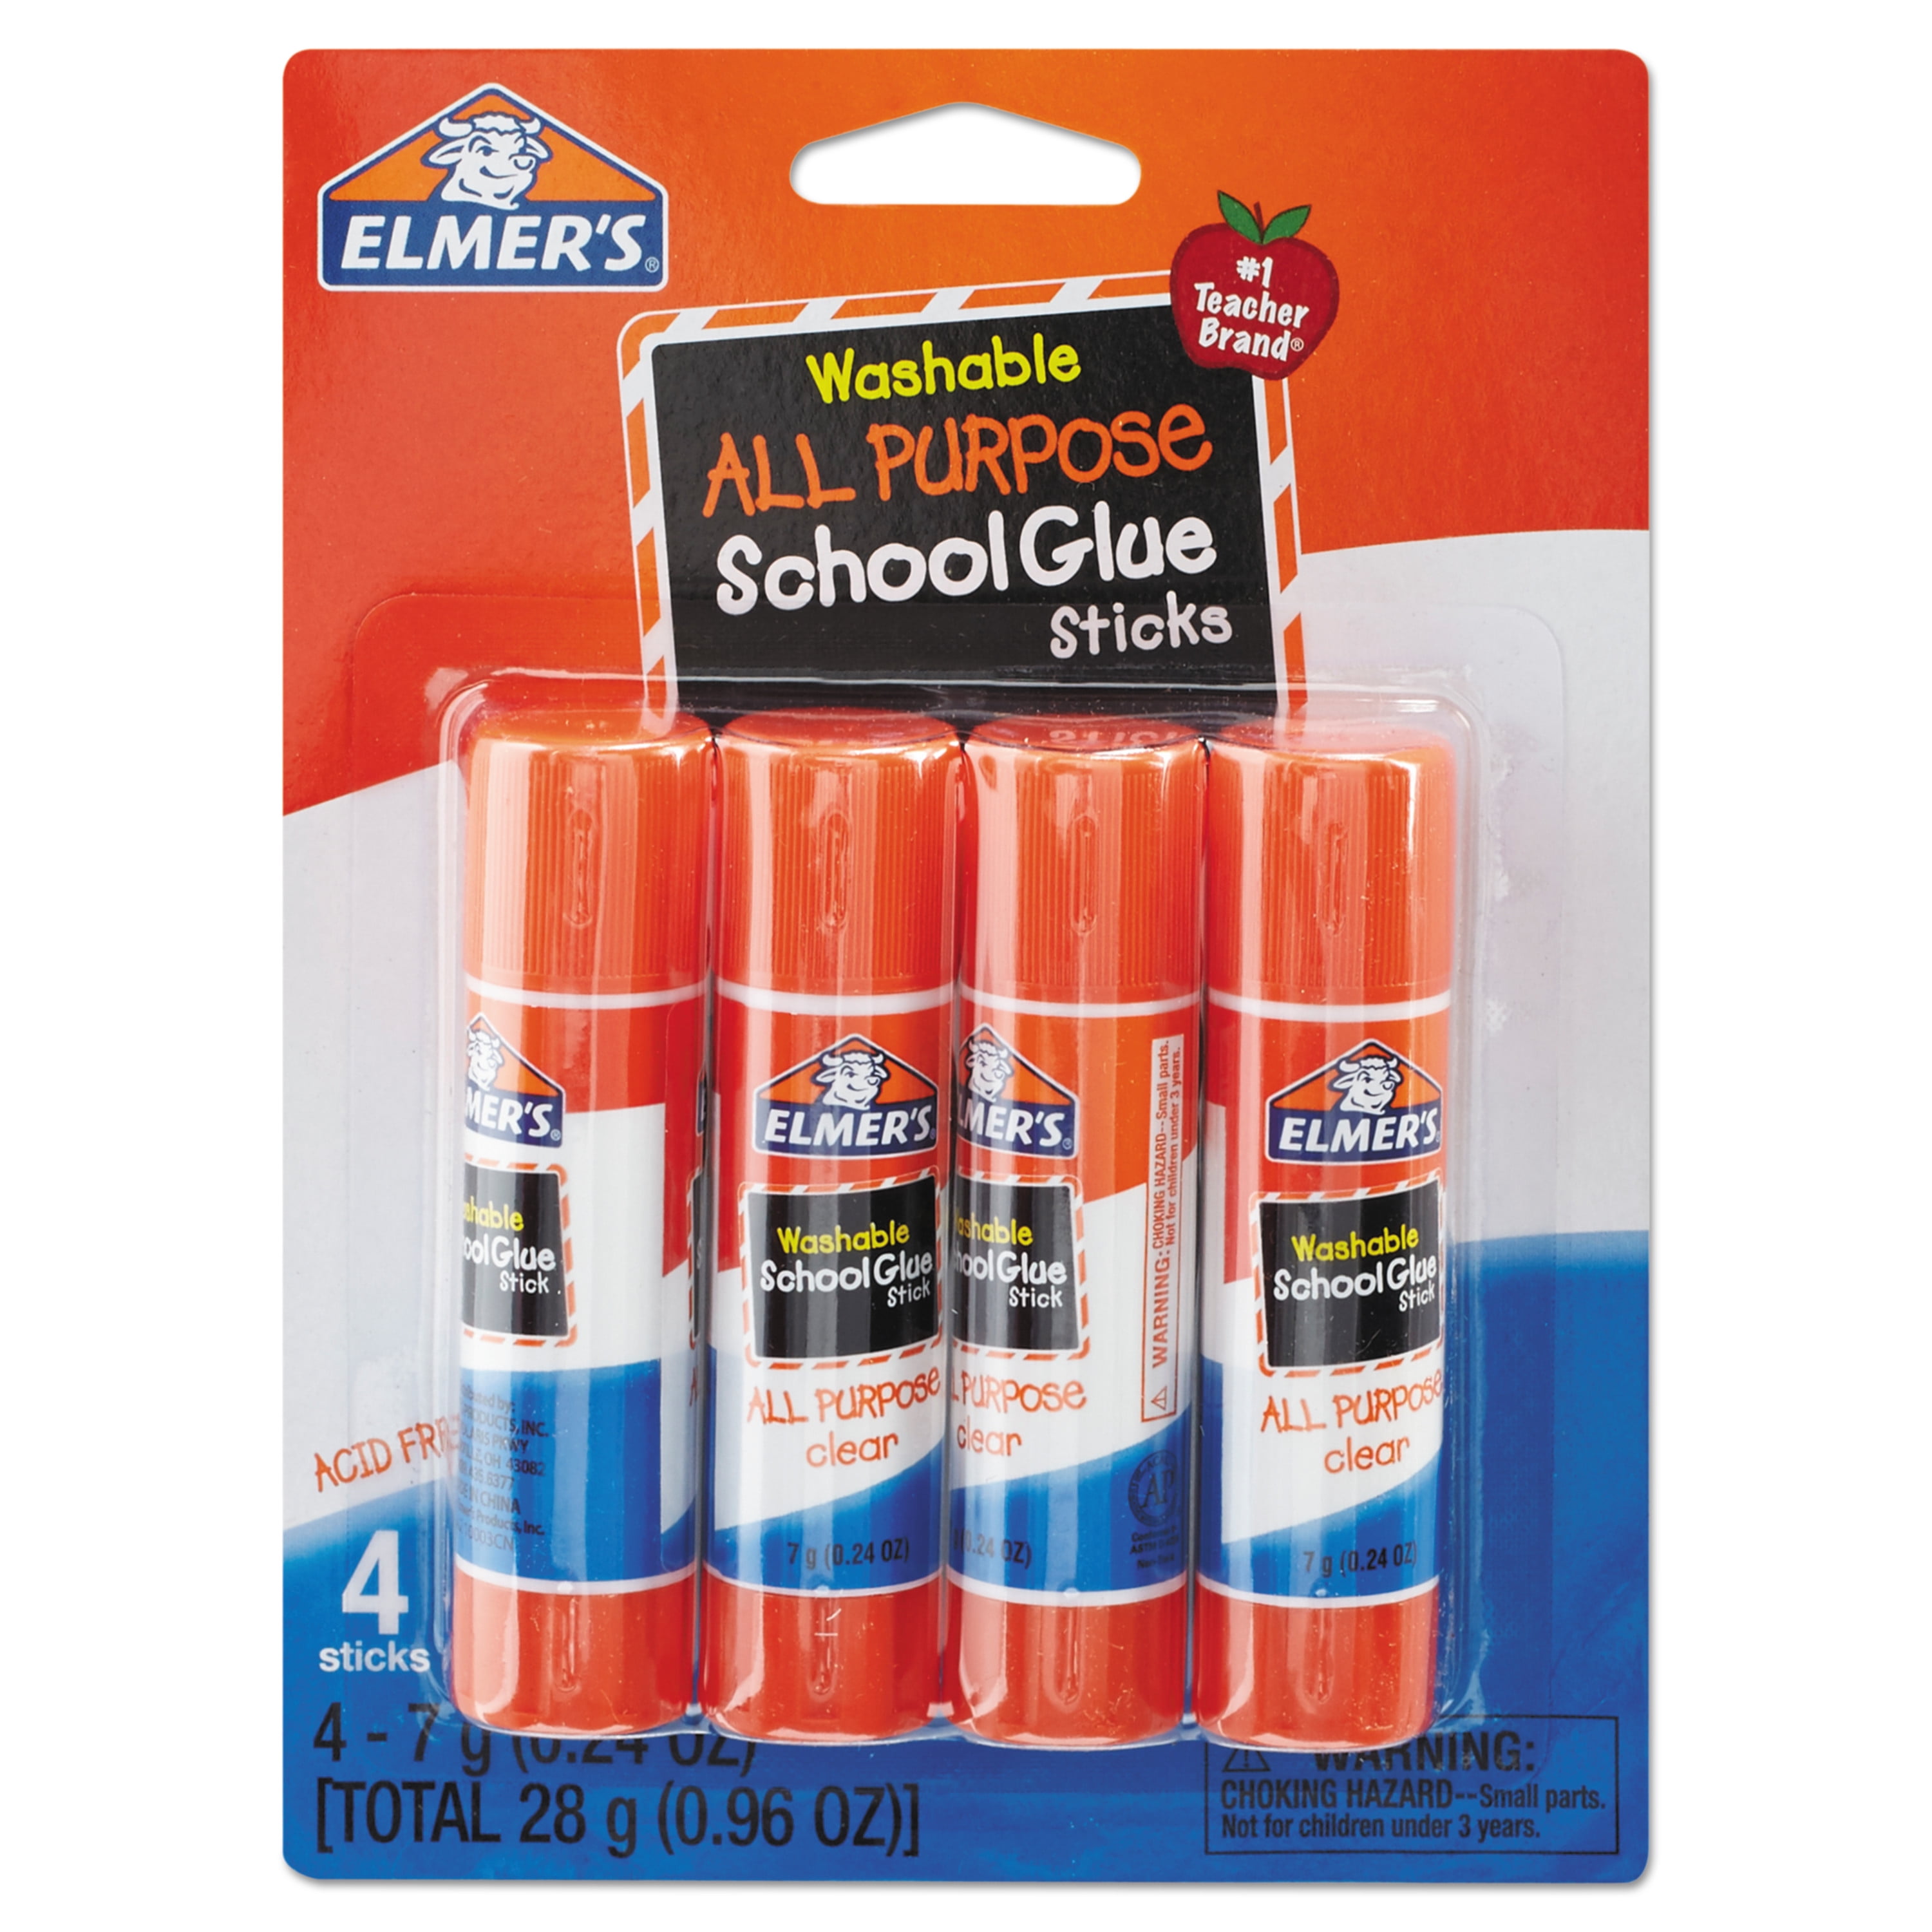 Scholastic Glue Sticks LOT of 2-4 packs (8 sticks total) .32 Oz